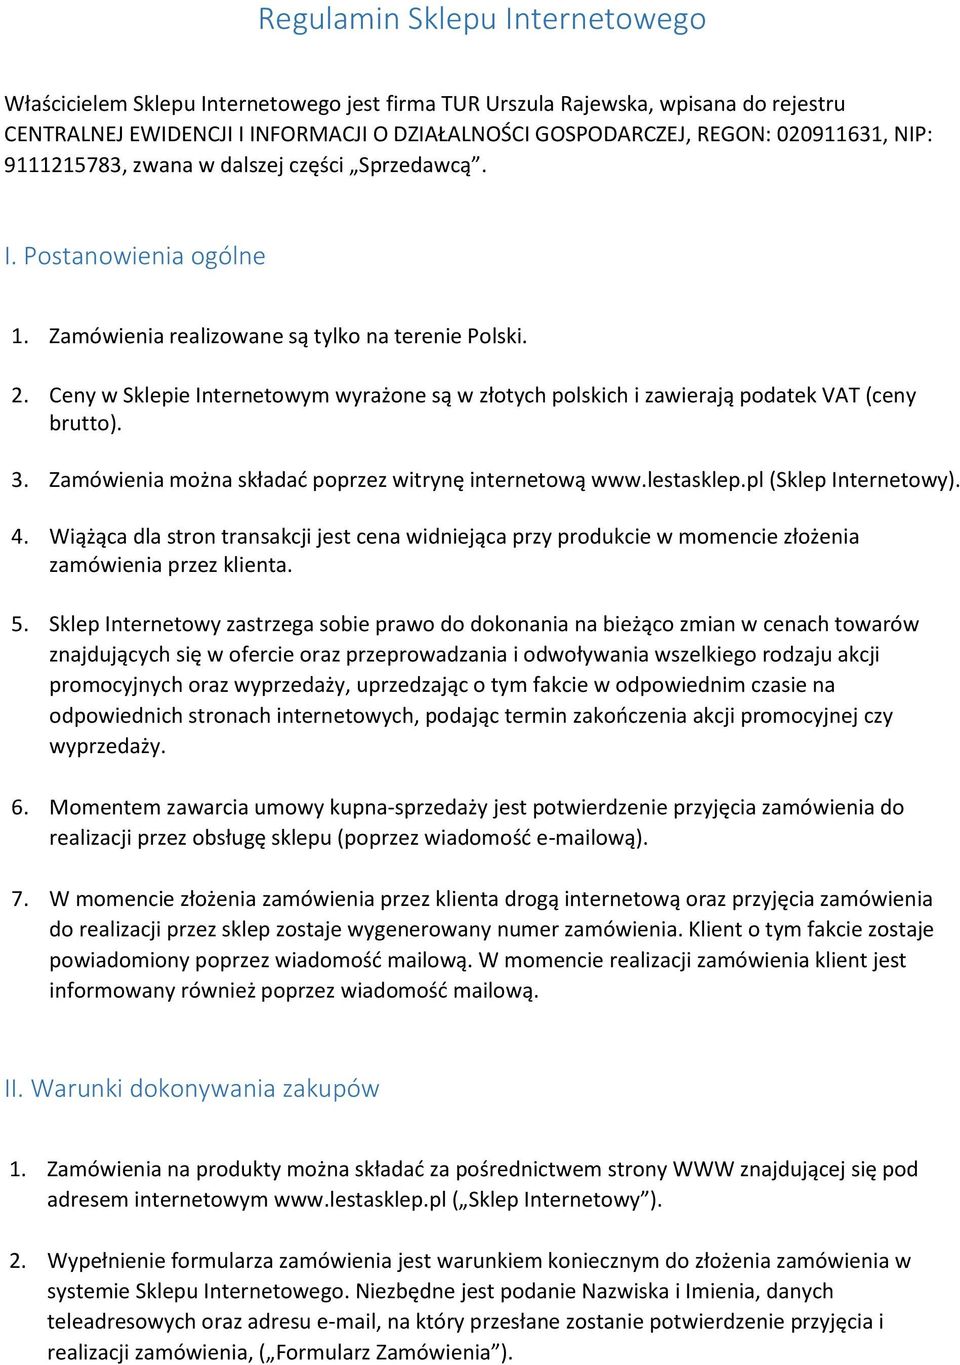 Ceny w Sklepie Internetowym wyrażone są w złotych polskich i zawierają podatek VAT (ceny brutto). 3. Zamówienia można składać poprzez witrynę internetową www.lestasklep.pl (Sklep Internetowy). 4.